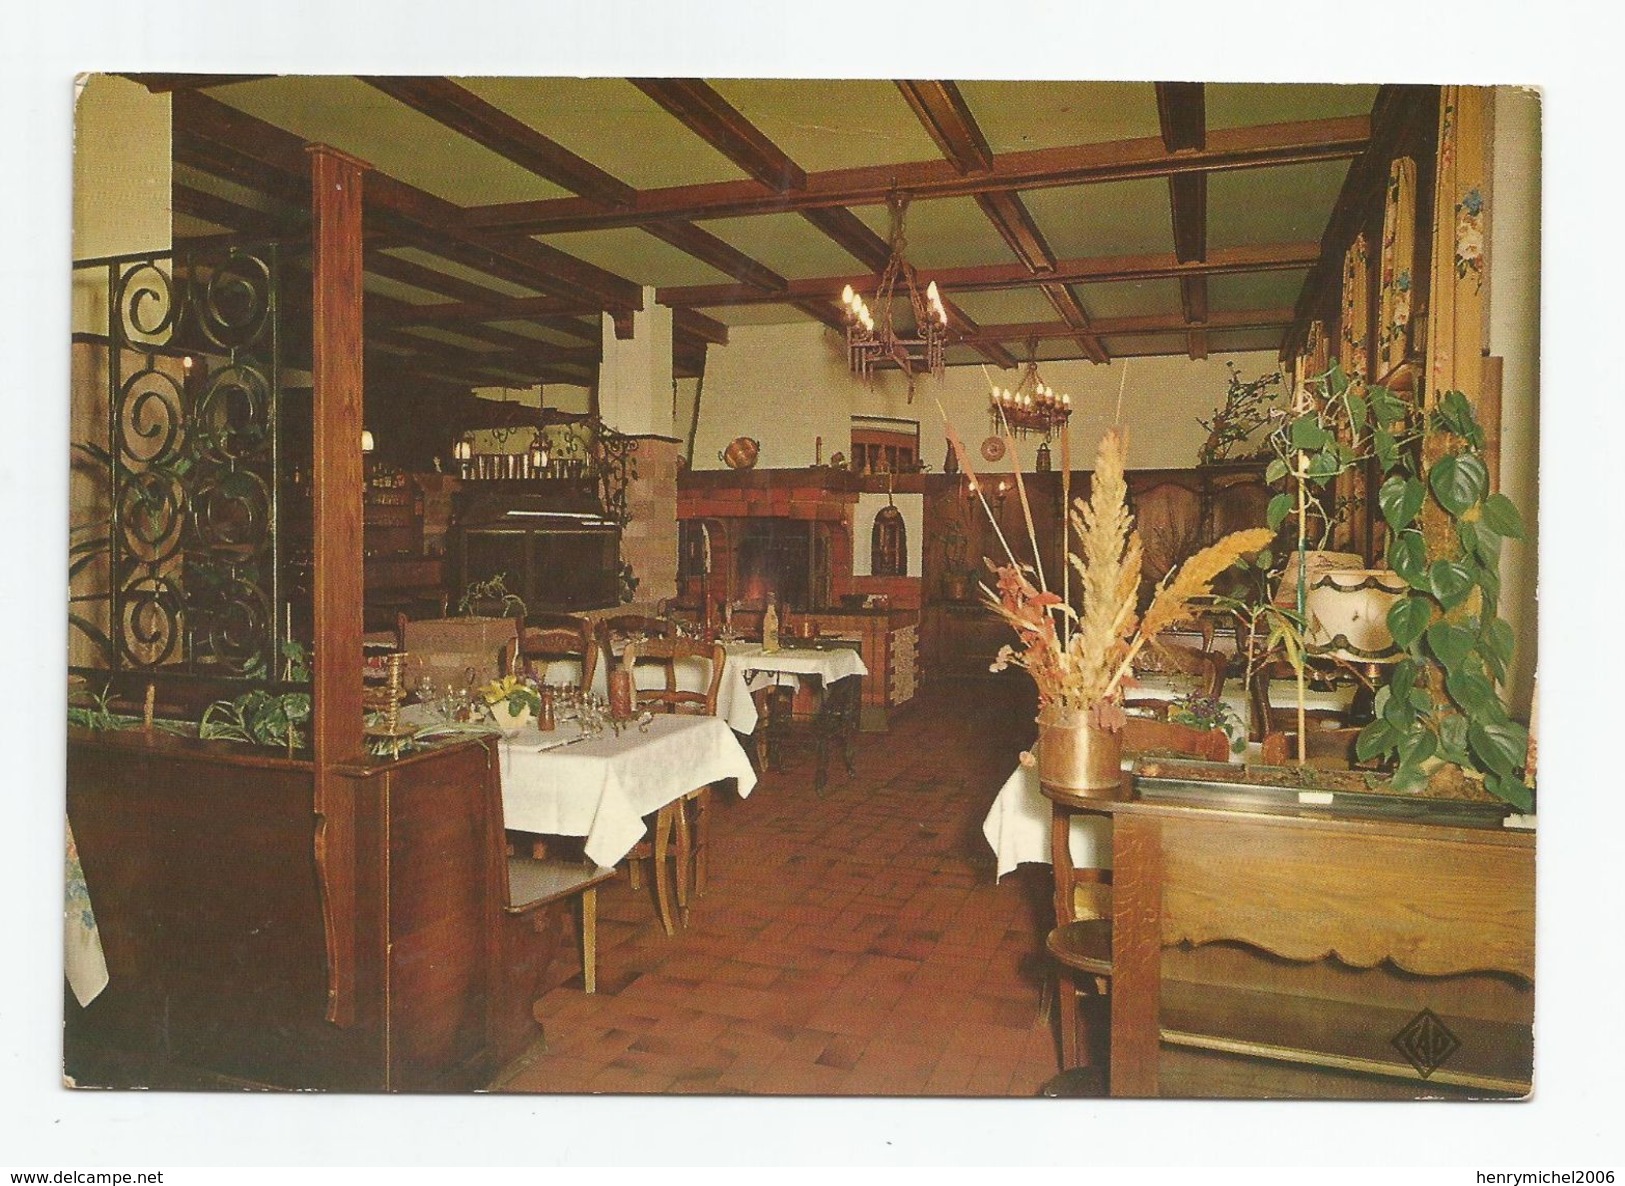 68 Haut Rhin - Ribeauvillé Relais Des Menetriers Restaurant Grill Alsace Route Du Vin 1976 - Ribeauvillé